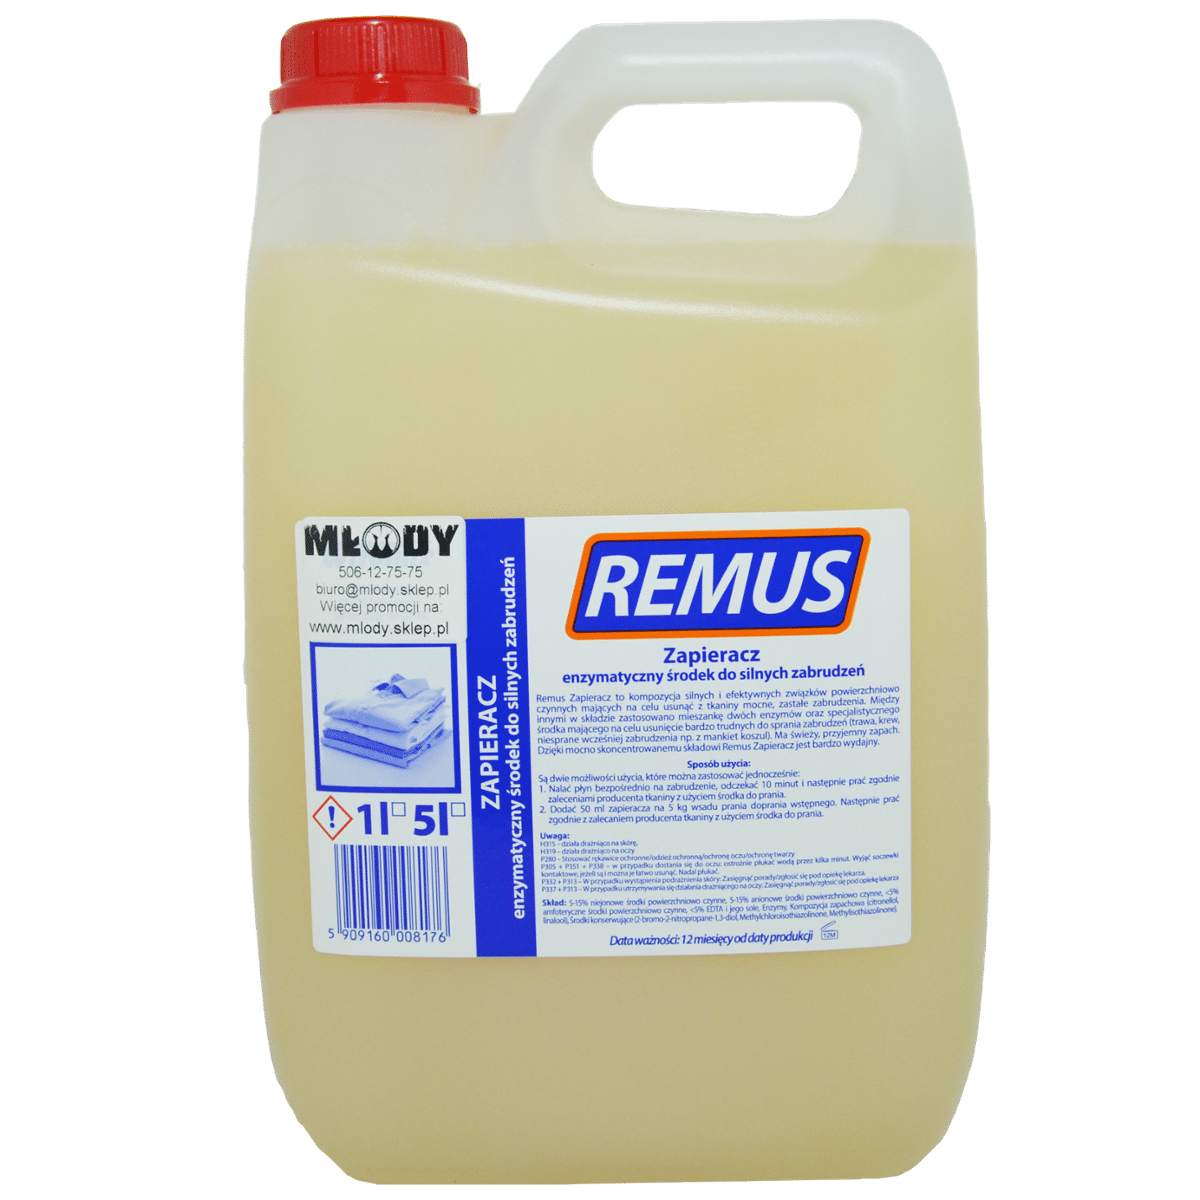 WIROMIX Remus Płyn Zapierający 5l Enzymatyczny Środek do Silnych Zabrudzeń